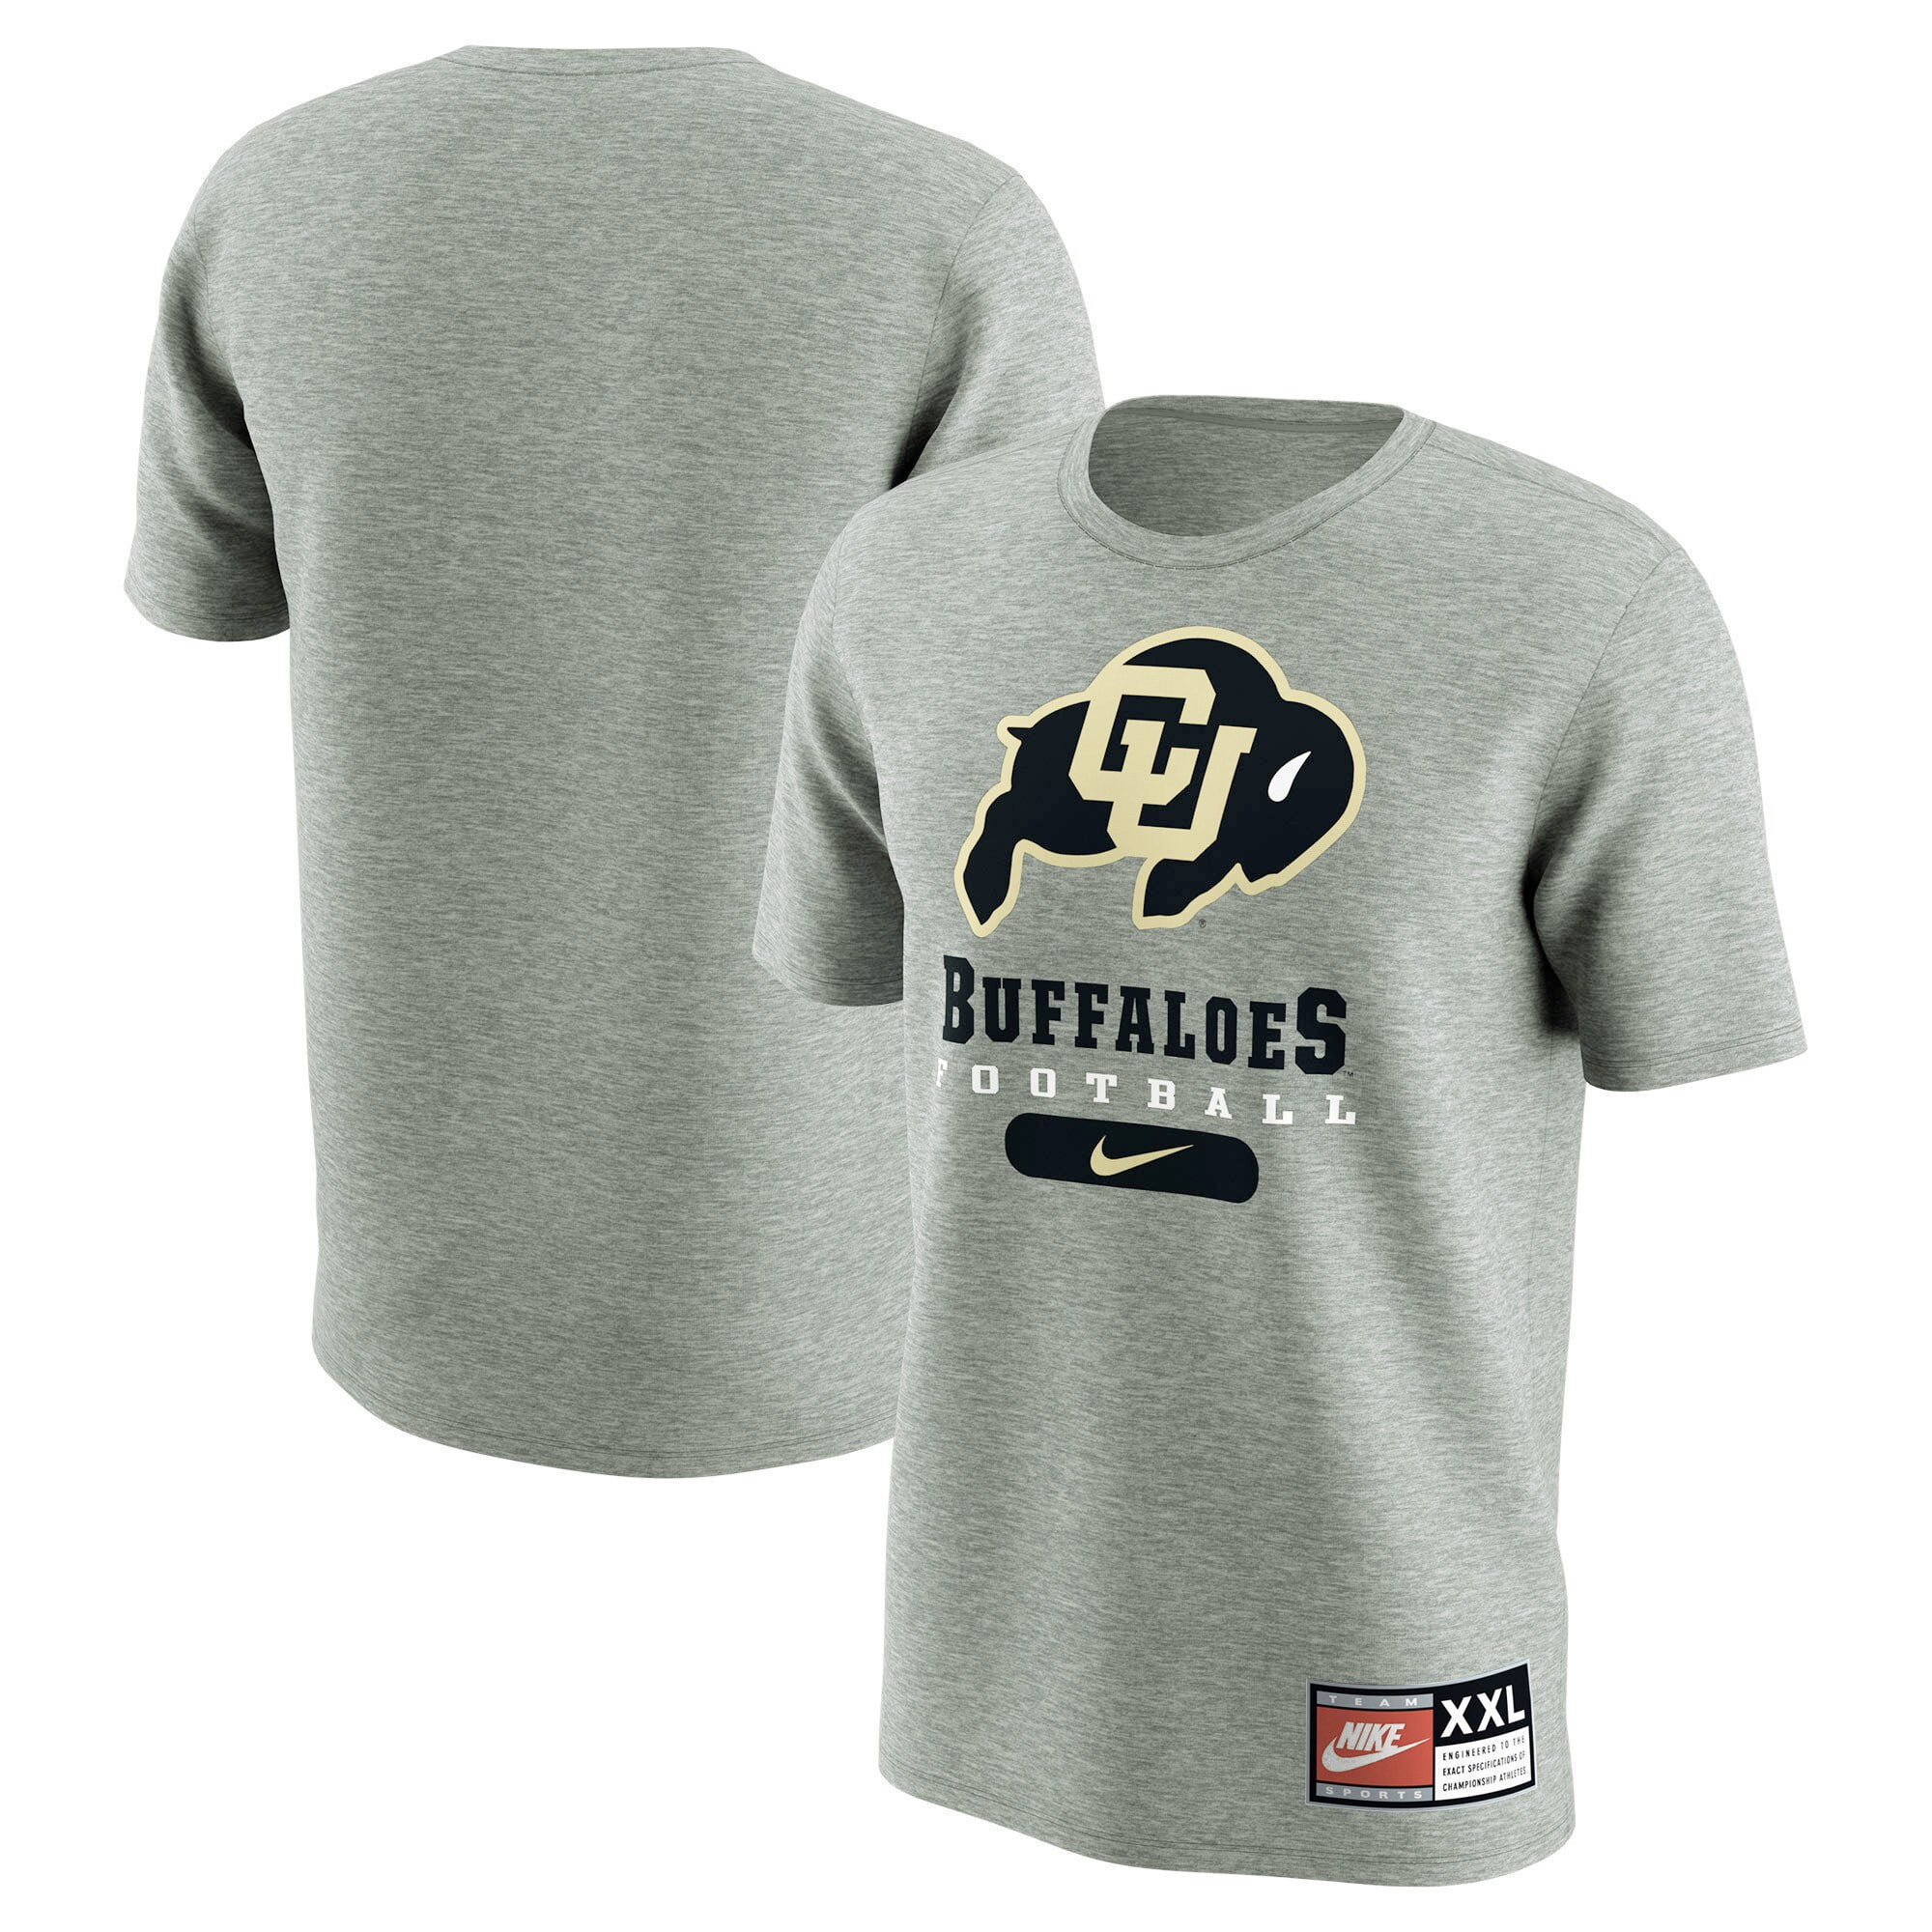 Colorado Buffaloes Nike Retro Pack T-Shirt - Gray - Walmart.com ...